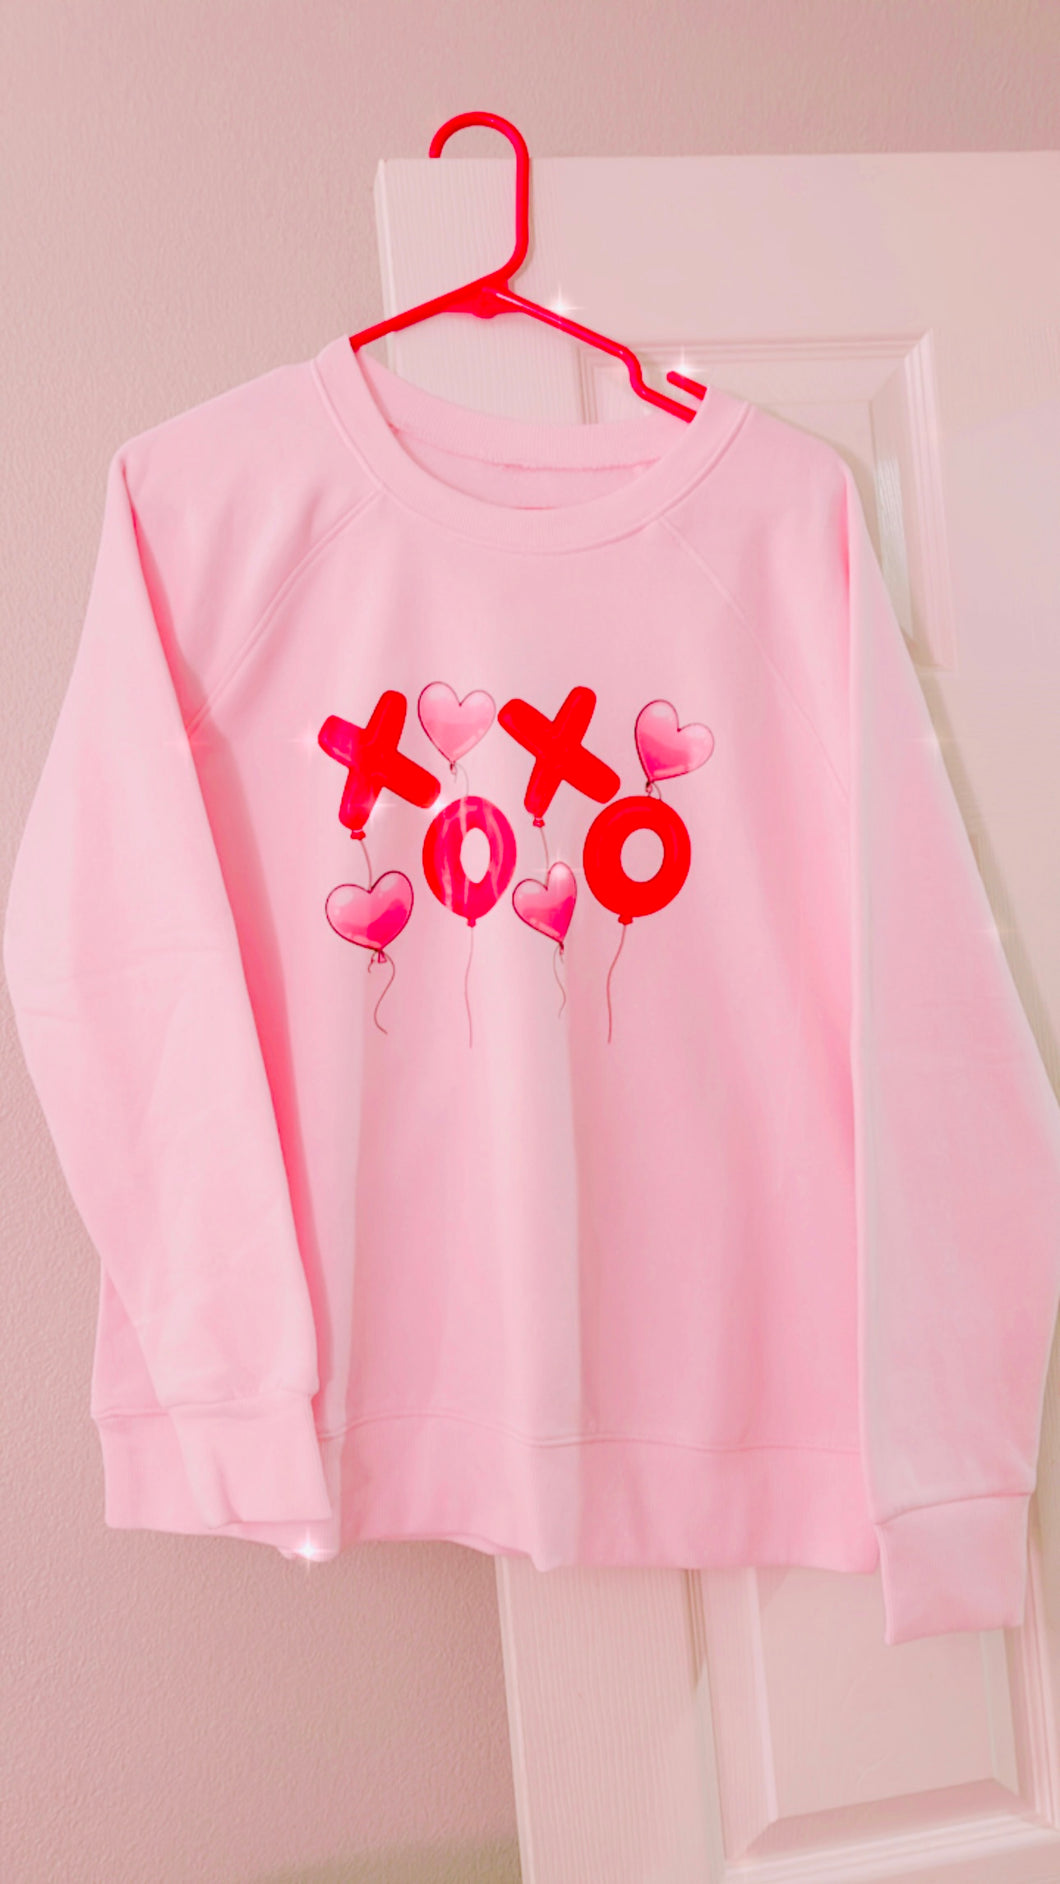 Xoxo balloons crewneck sweatshirt